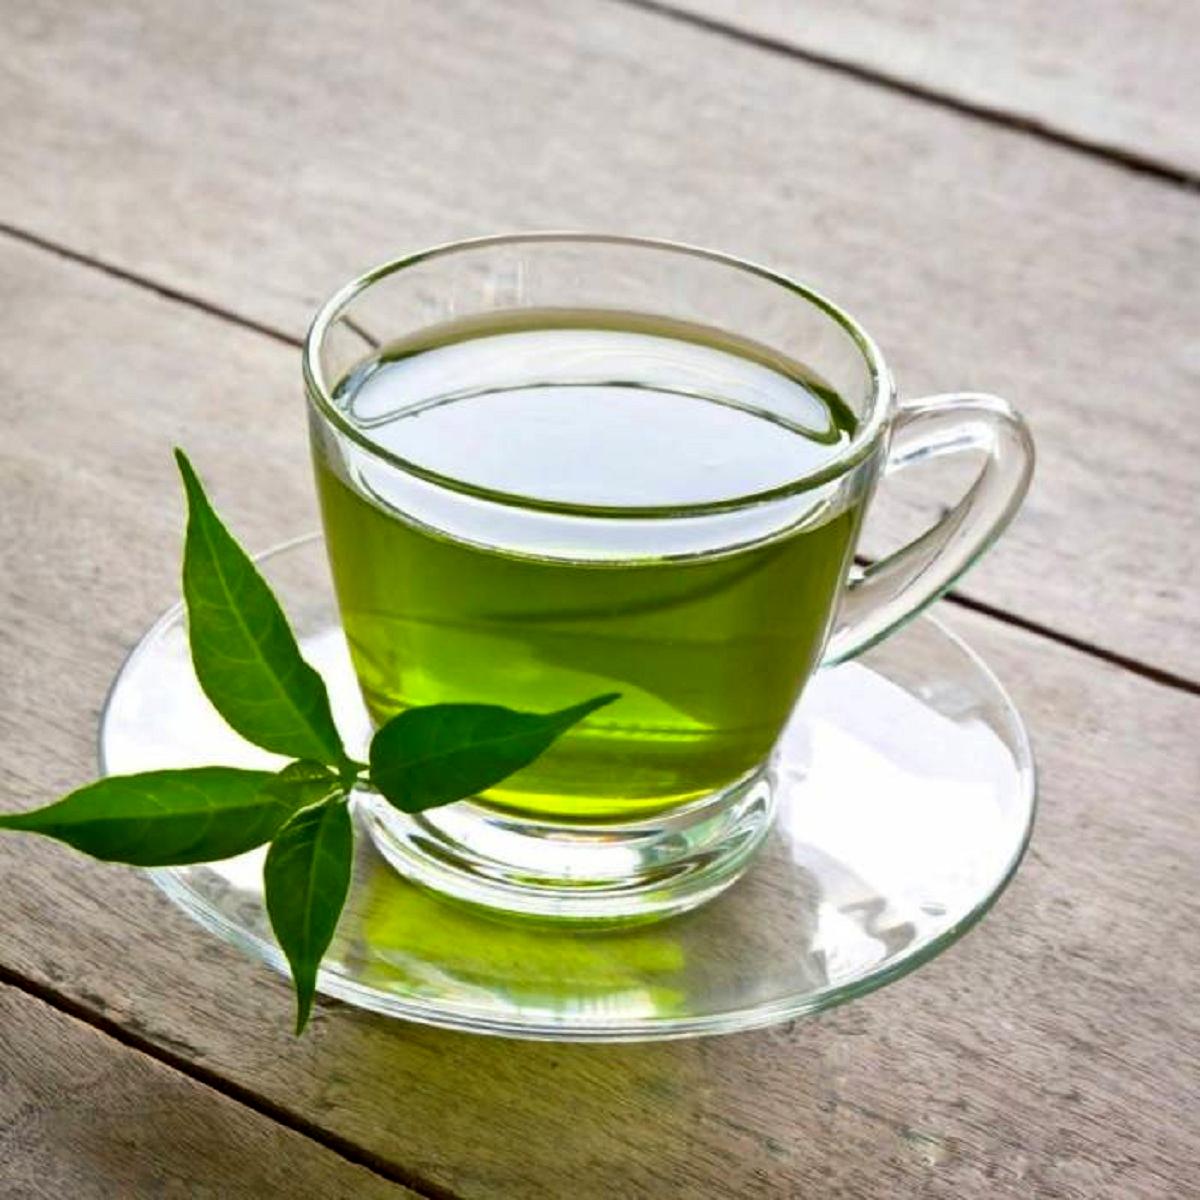 این بیماری خطرناک را با خوردن چای سبز رفع کنید